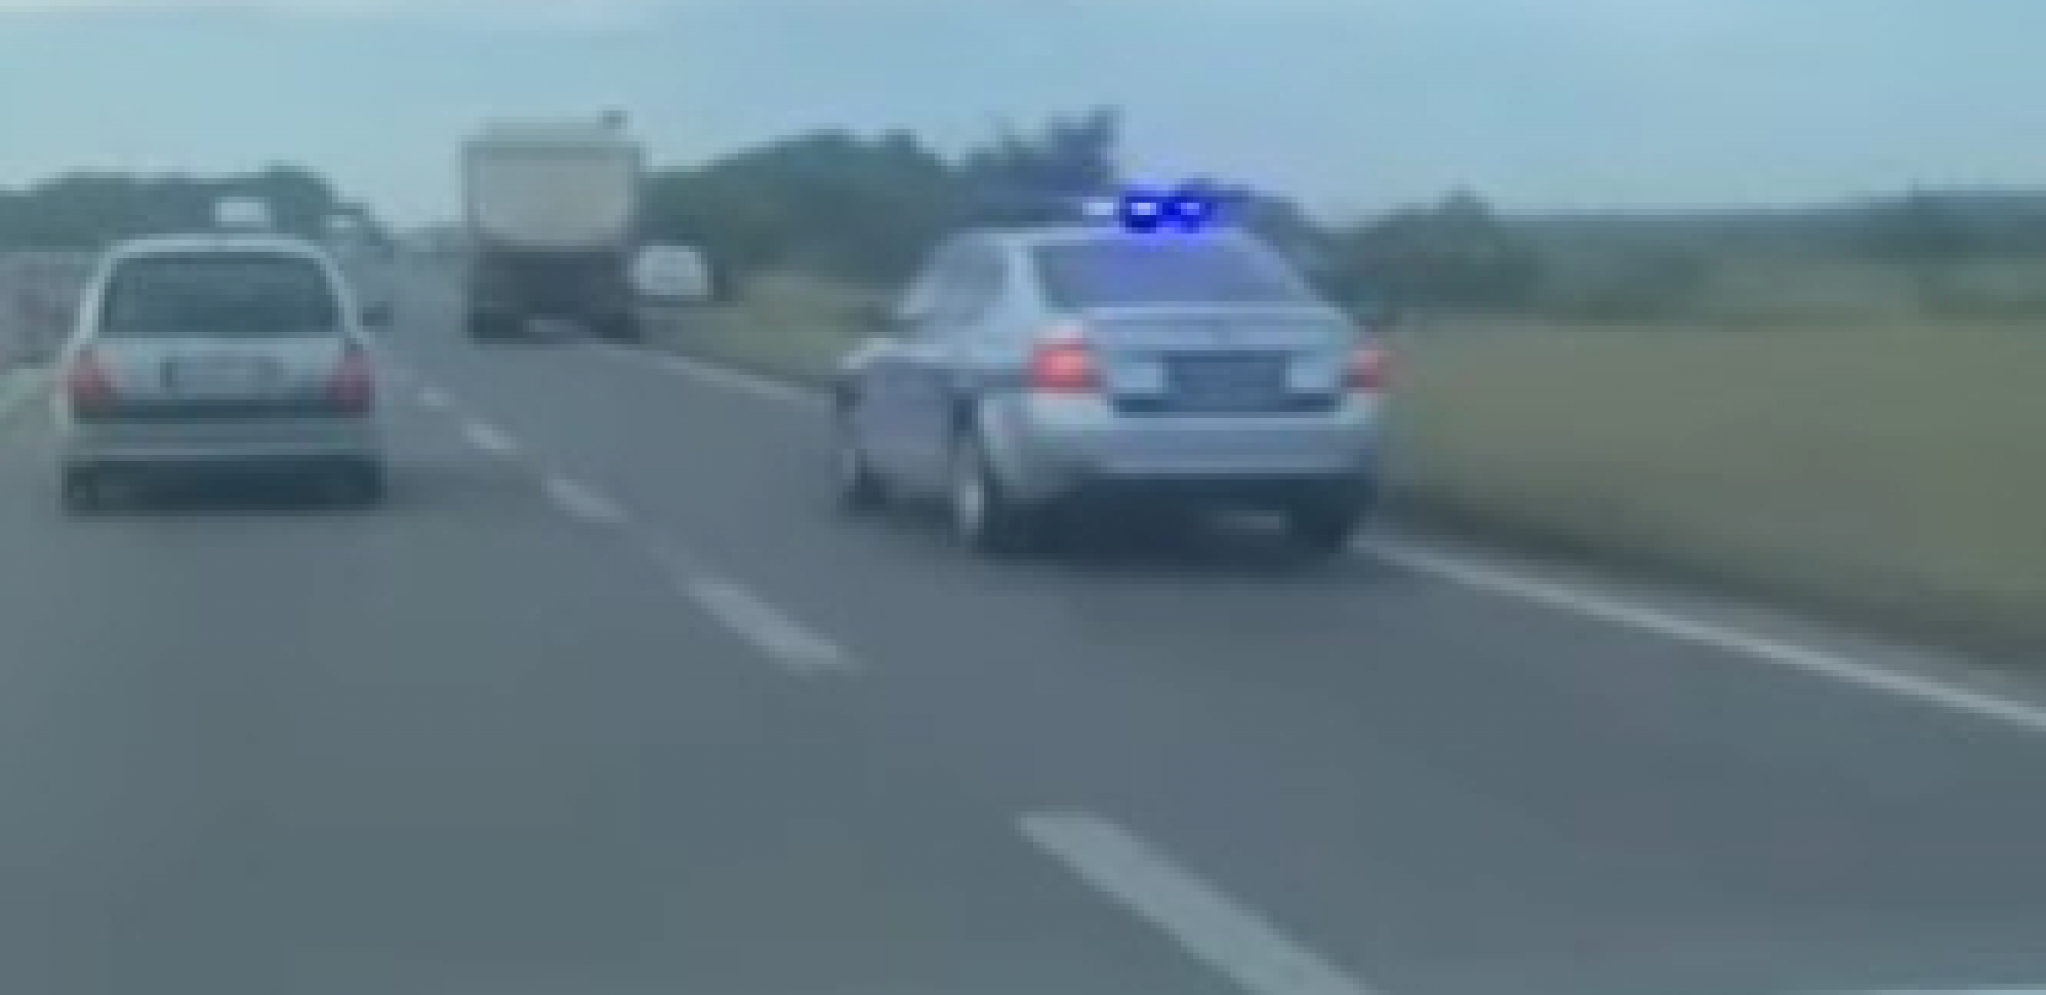 SLETEO SA PUTA Saobraćajna nesreća kod Niša, uviđaj u toku (VIDEO)